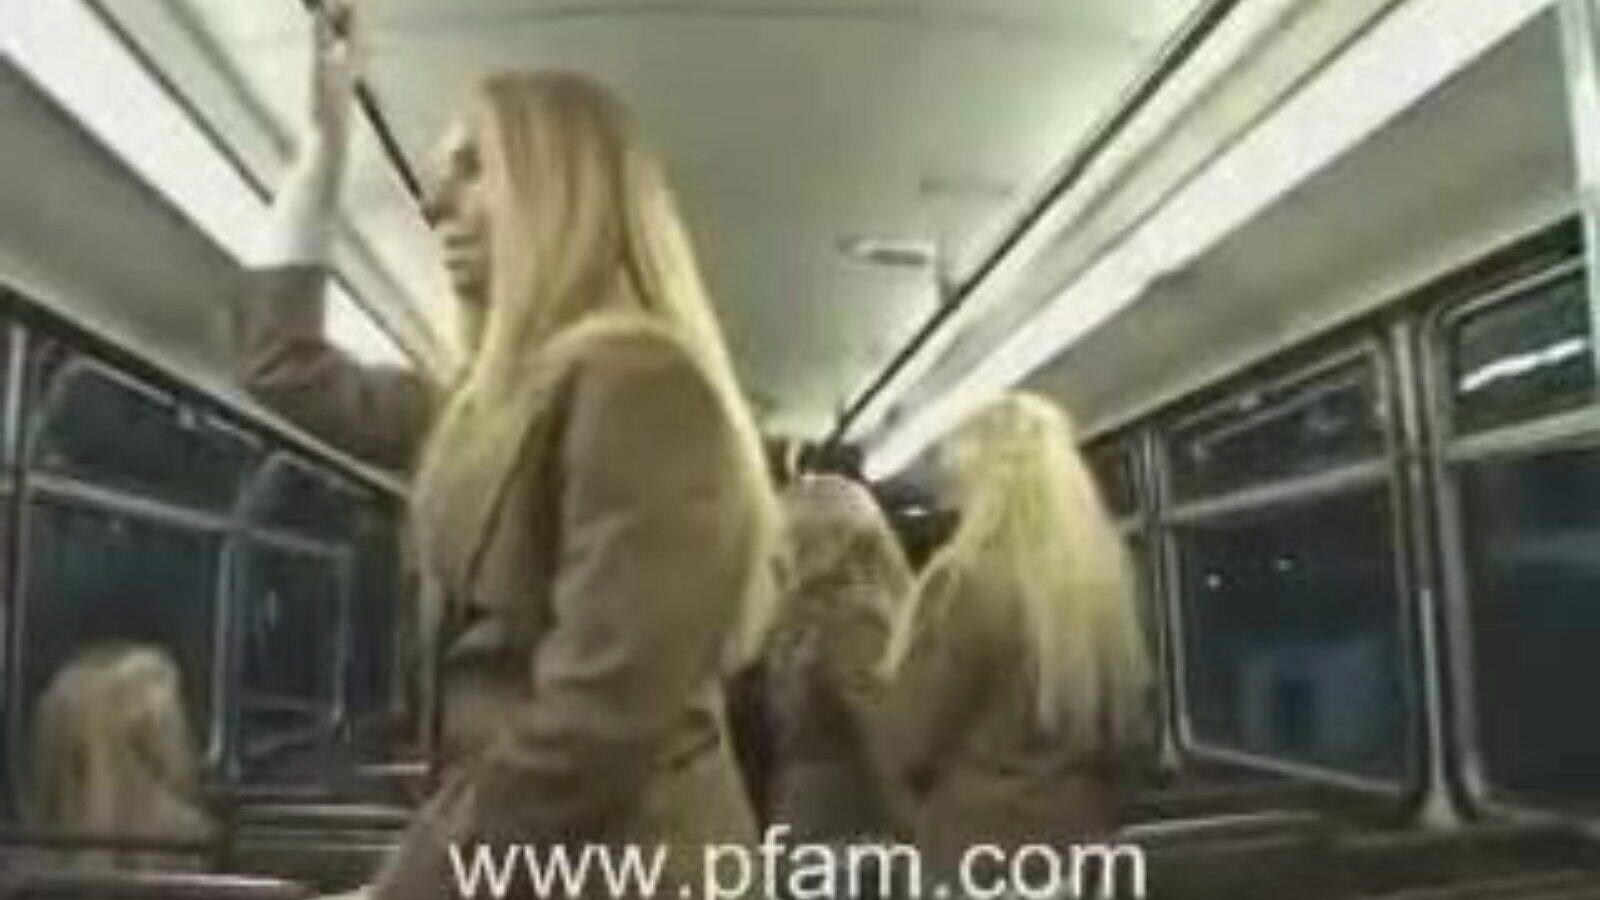 hvid skolepige og asiatisk fyr, den blonde college hotty gør handjob for den japanske dreng i bussen.